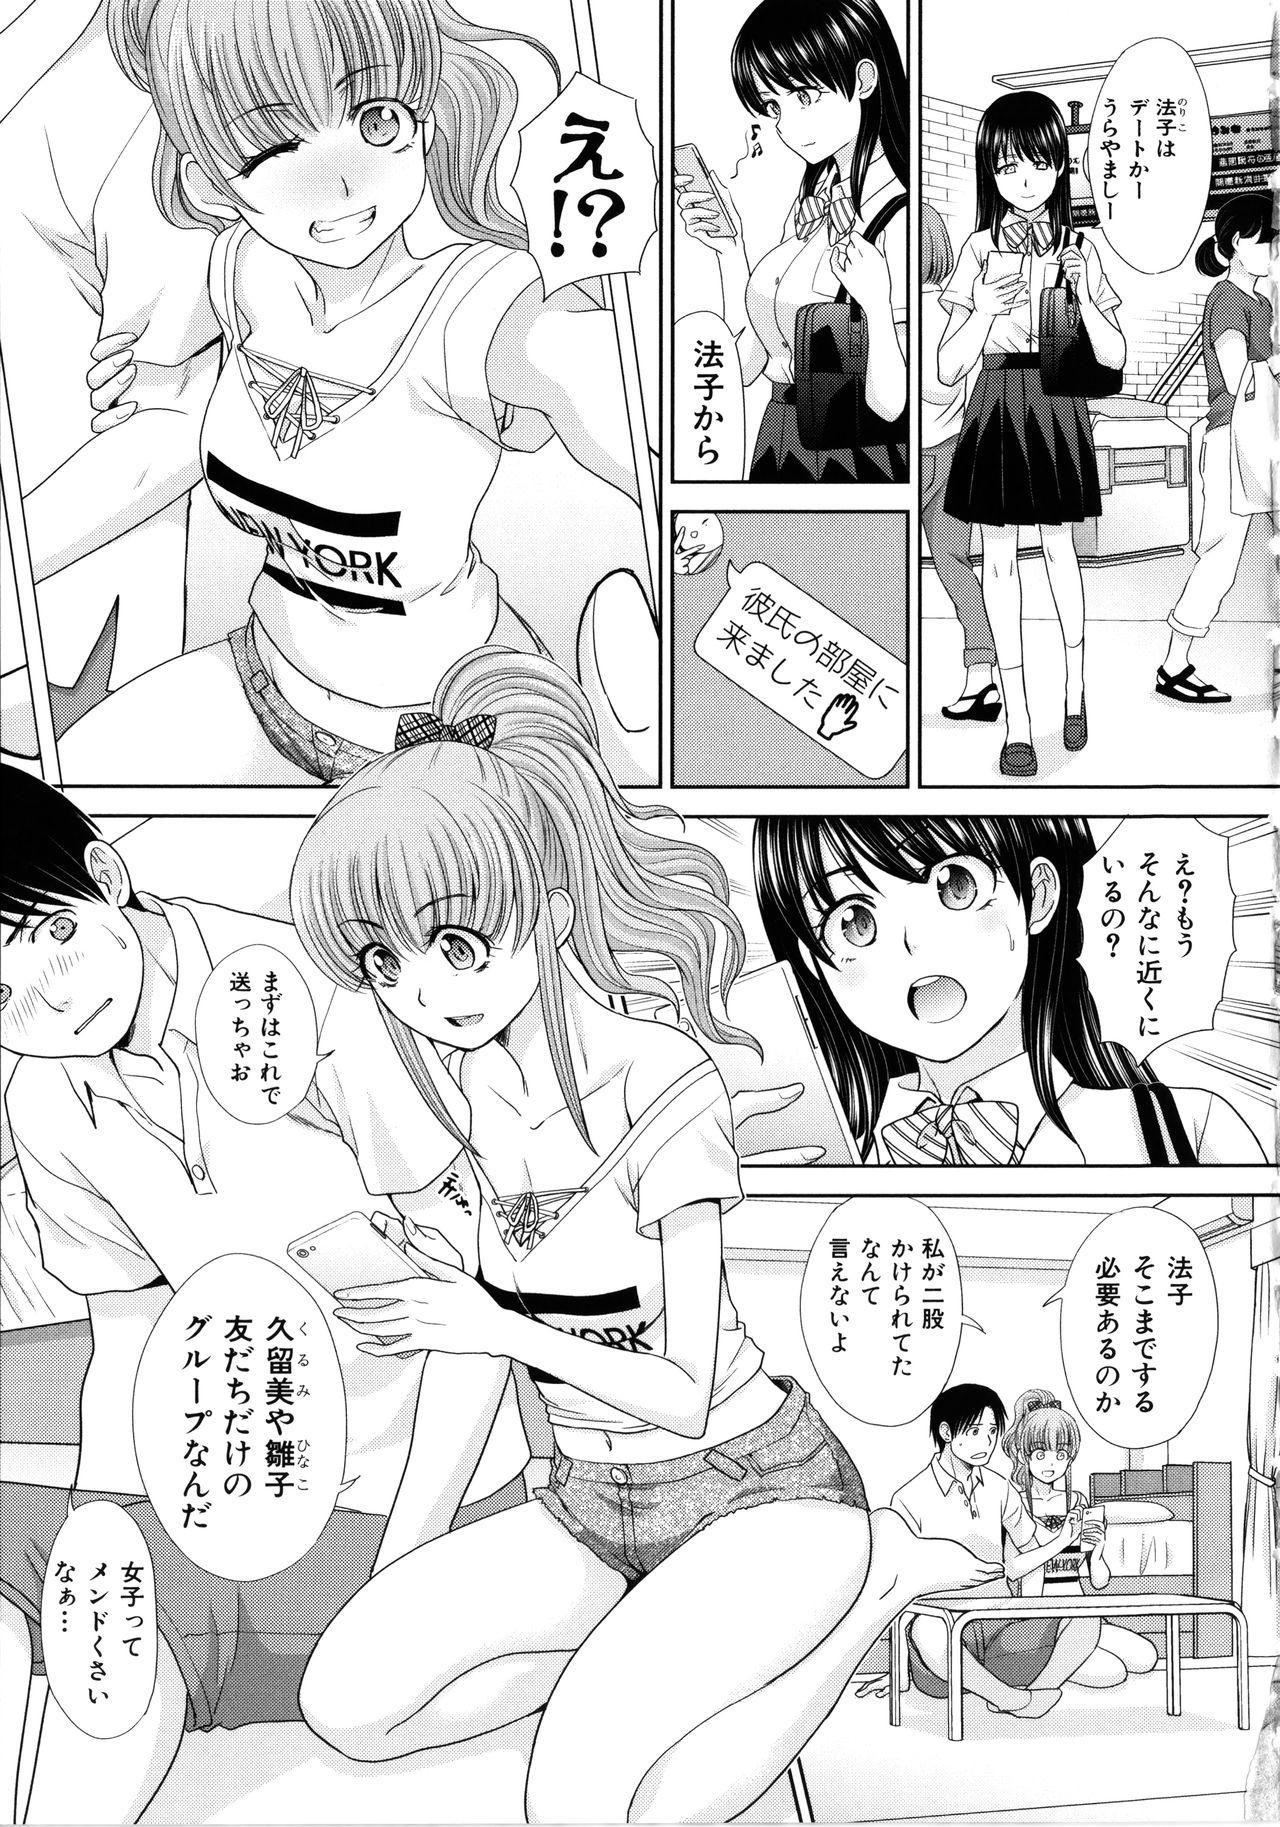 Lez Hardcore Imouto to Yatte Shimattashi, Imouto no Tomodachi to mo Yatte Cocksucking - Page 5